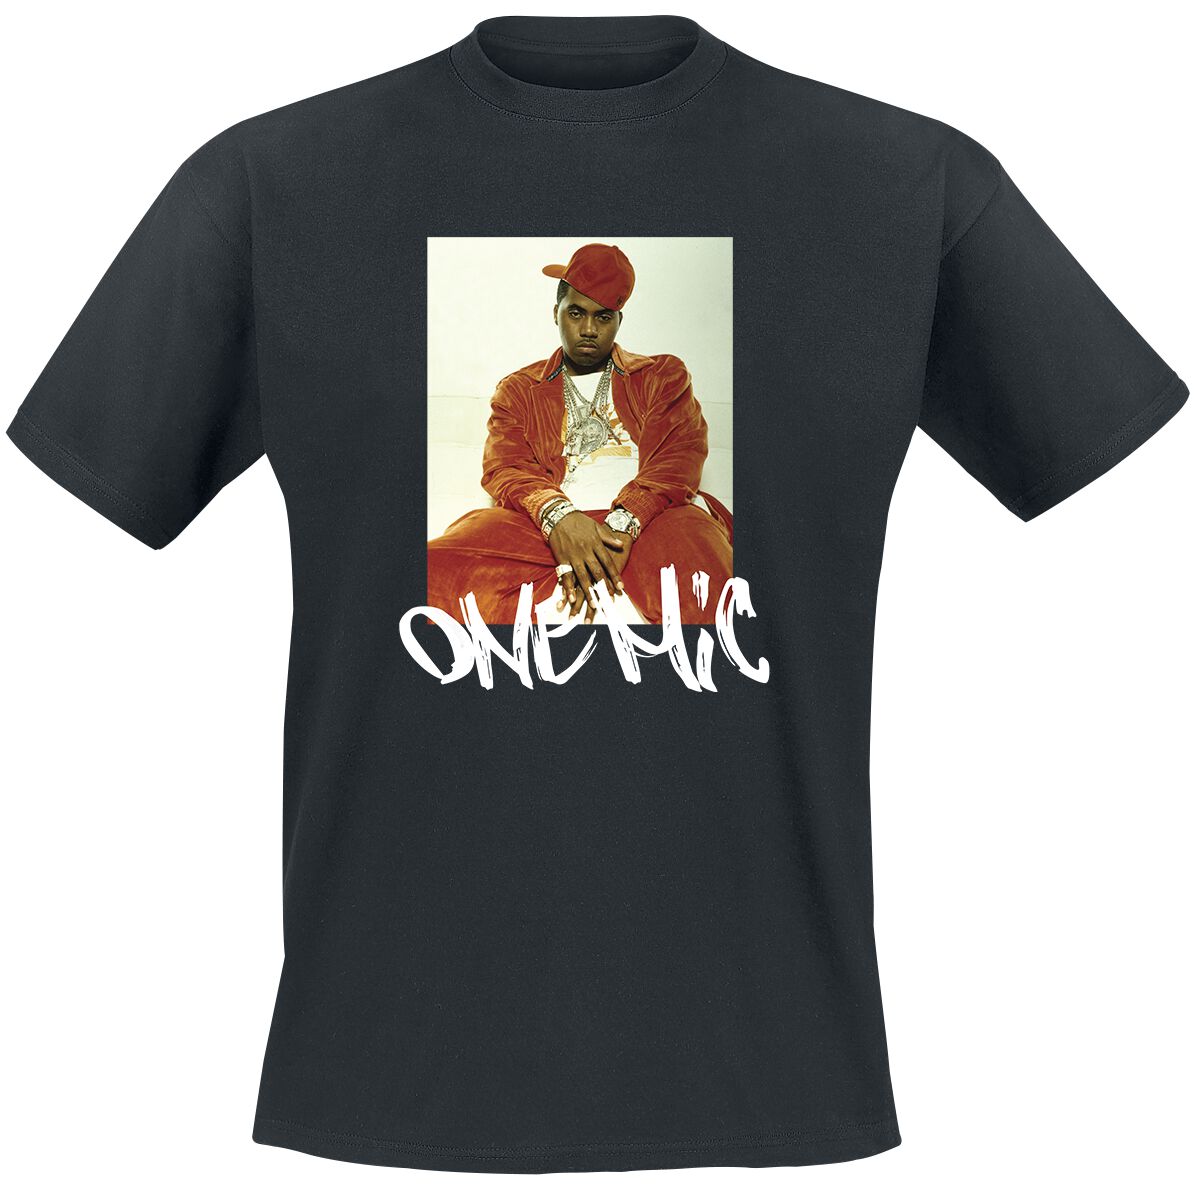 Nas T-Shirt - Stillmatic One Mic - S bis 3XL - für Männer - Größe M - schwarz  - Lizenziertes Merchandise!